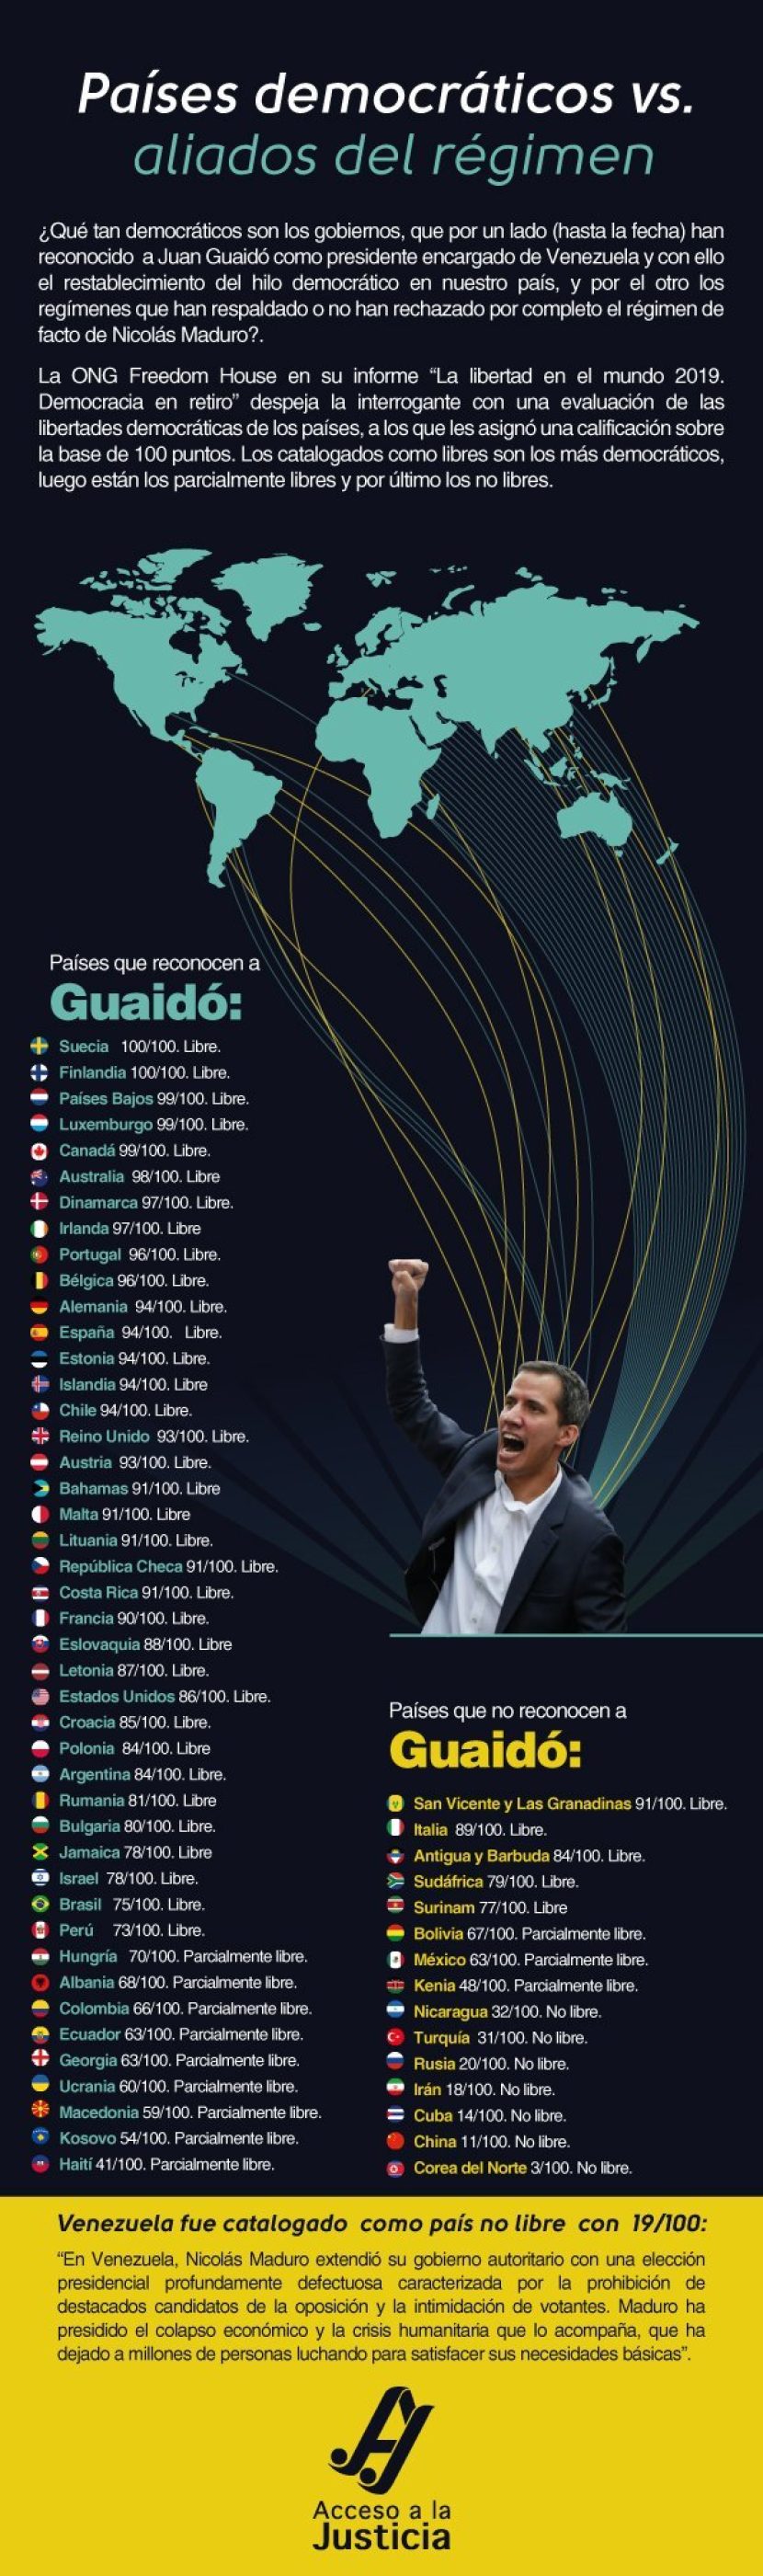 Países que apoyan o rechazan a Juan Guaidó